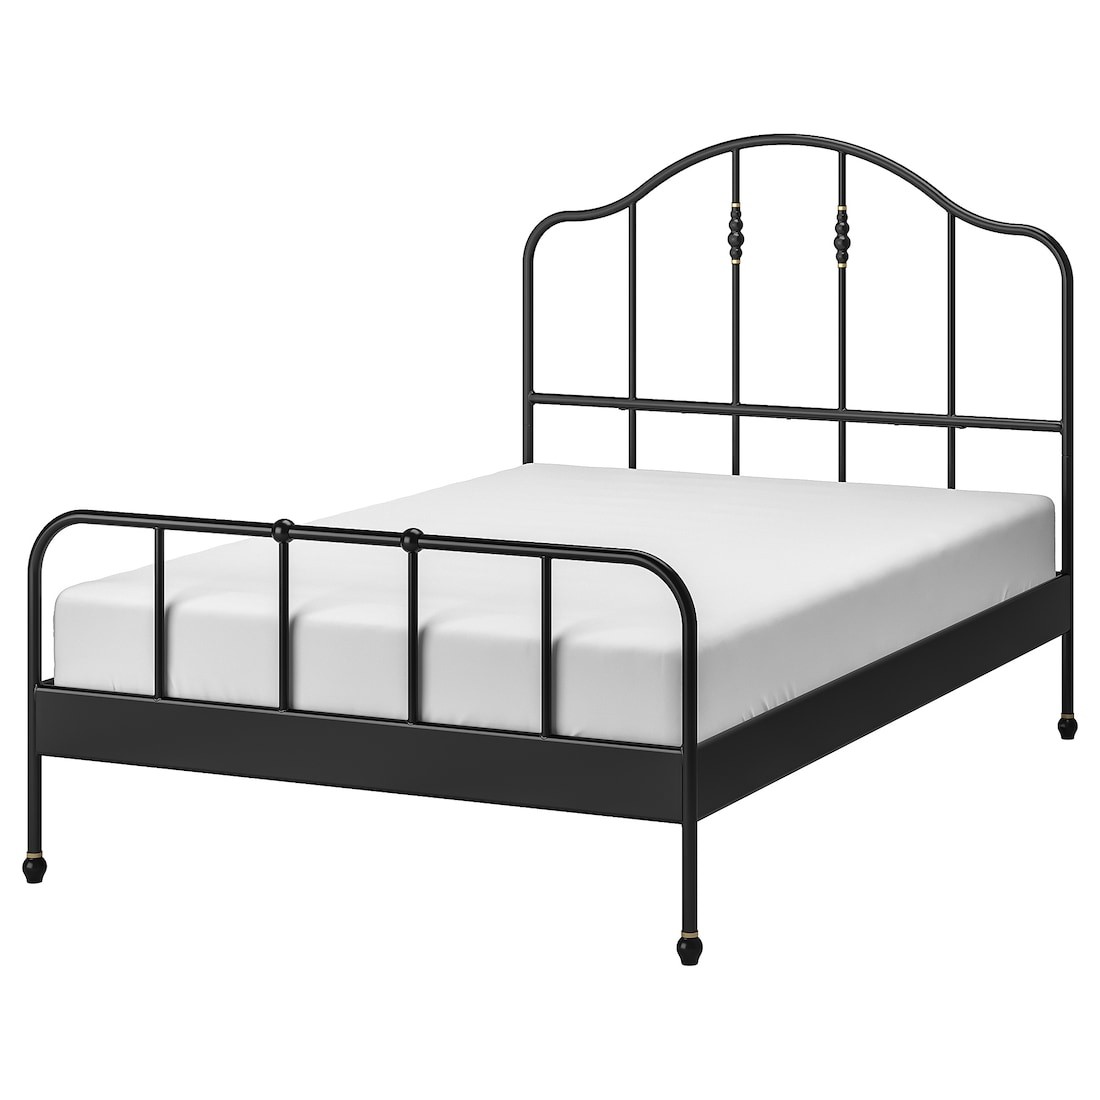 IKEA SAGSTUA САГСТУА Кровать двуспальная, черный / Lindbaden, 140x200 см 69495027 694.950.27